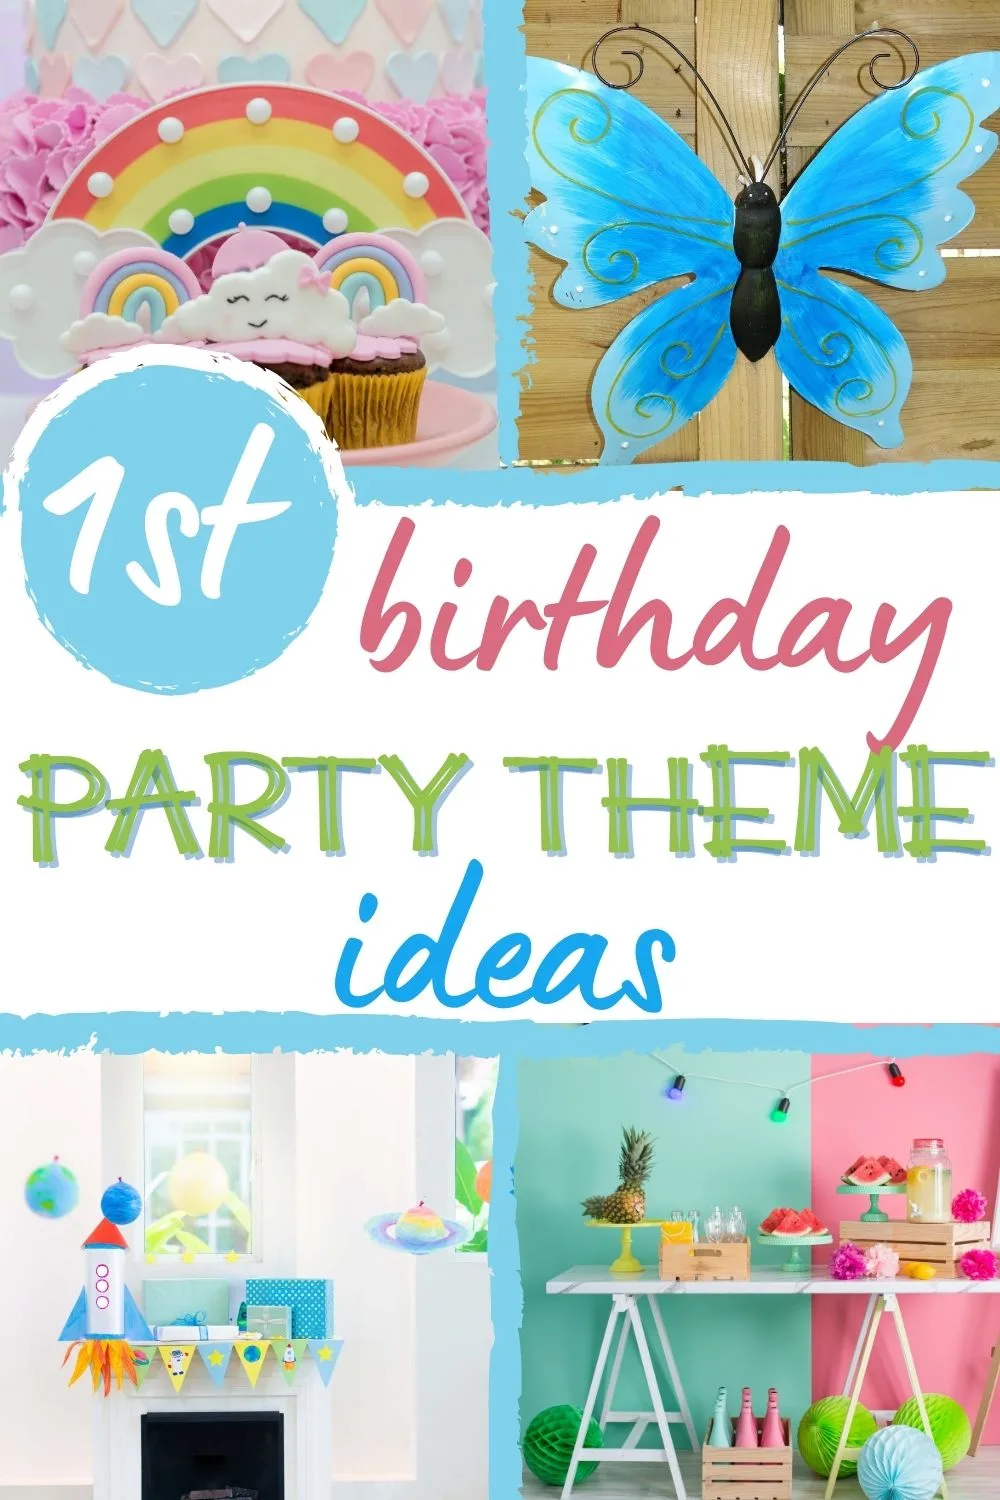 1st birthday party theme ideas